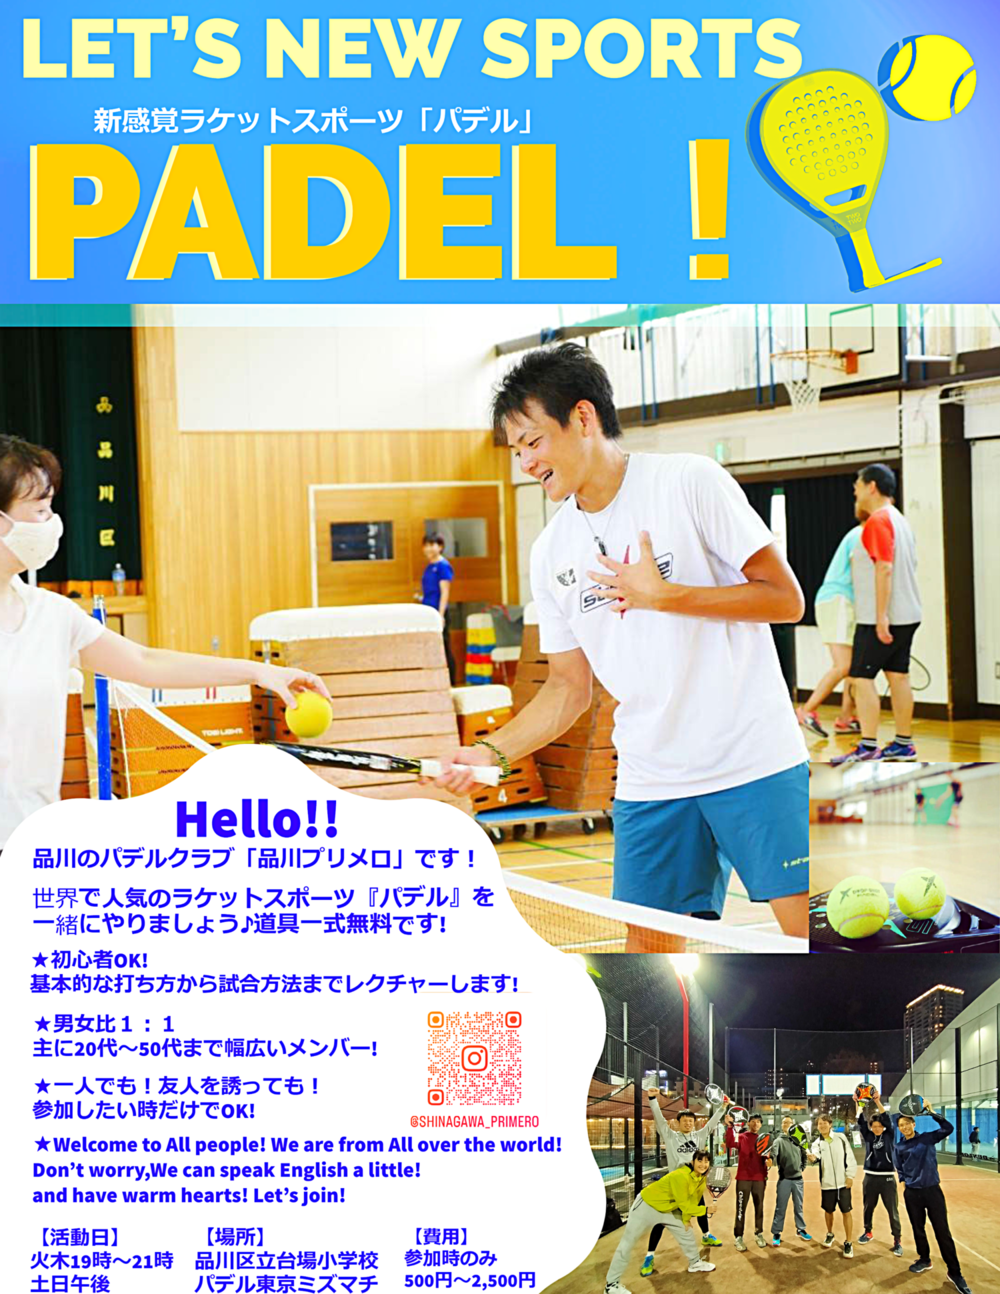 ★パデル★東京でラケットスポーツ「パデル」を体験・練習♪　～テニス？スカッシュ？のようなスポーツ体験～ 